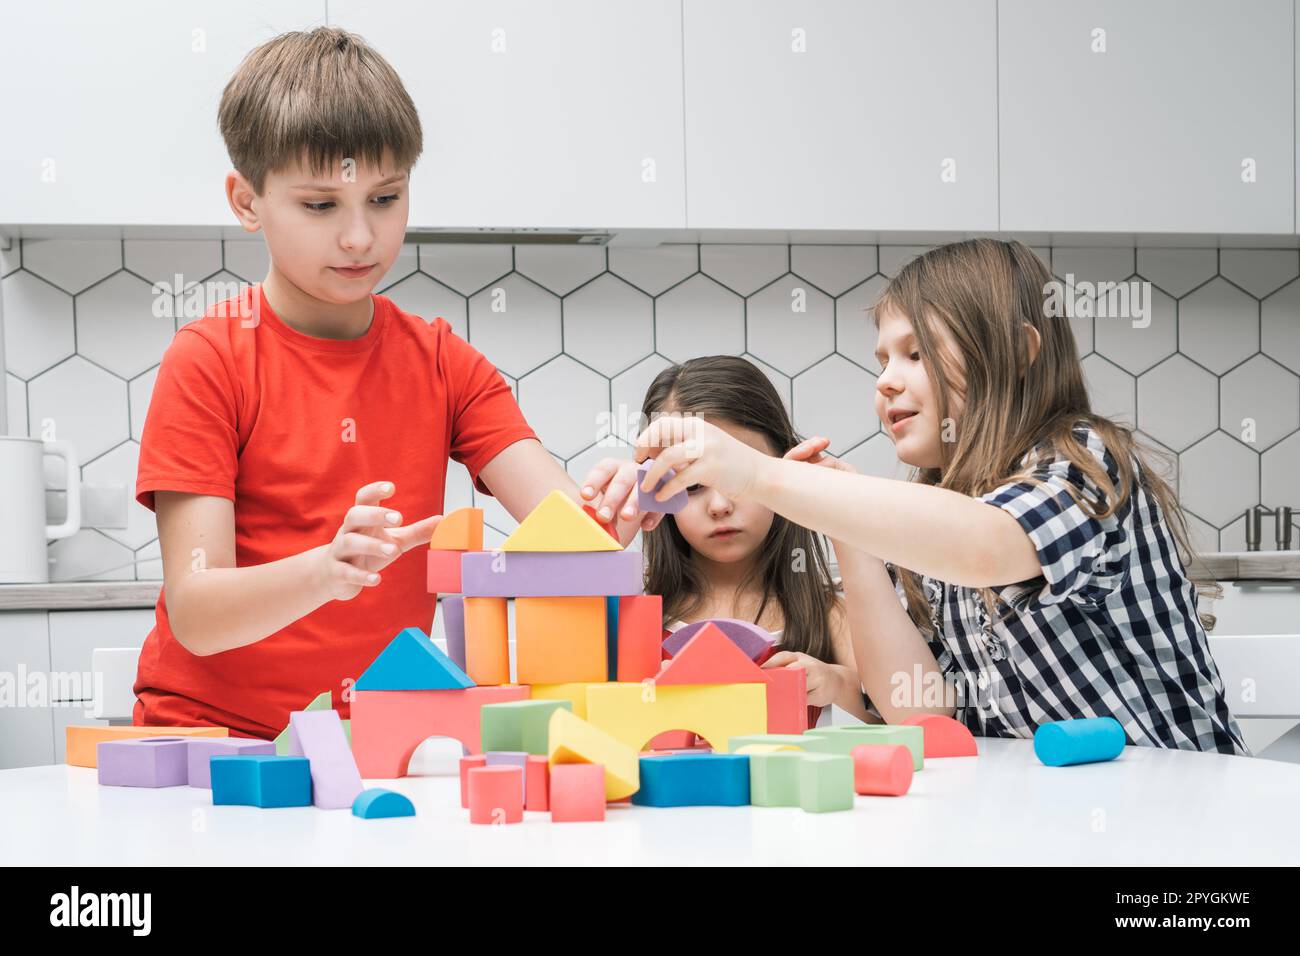 Positif, enfants concentrés de garçon et deux filles jouant avec des blocs colorés et construisant le château à partir de figures géométriques Banque D'Images